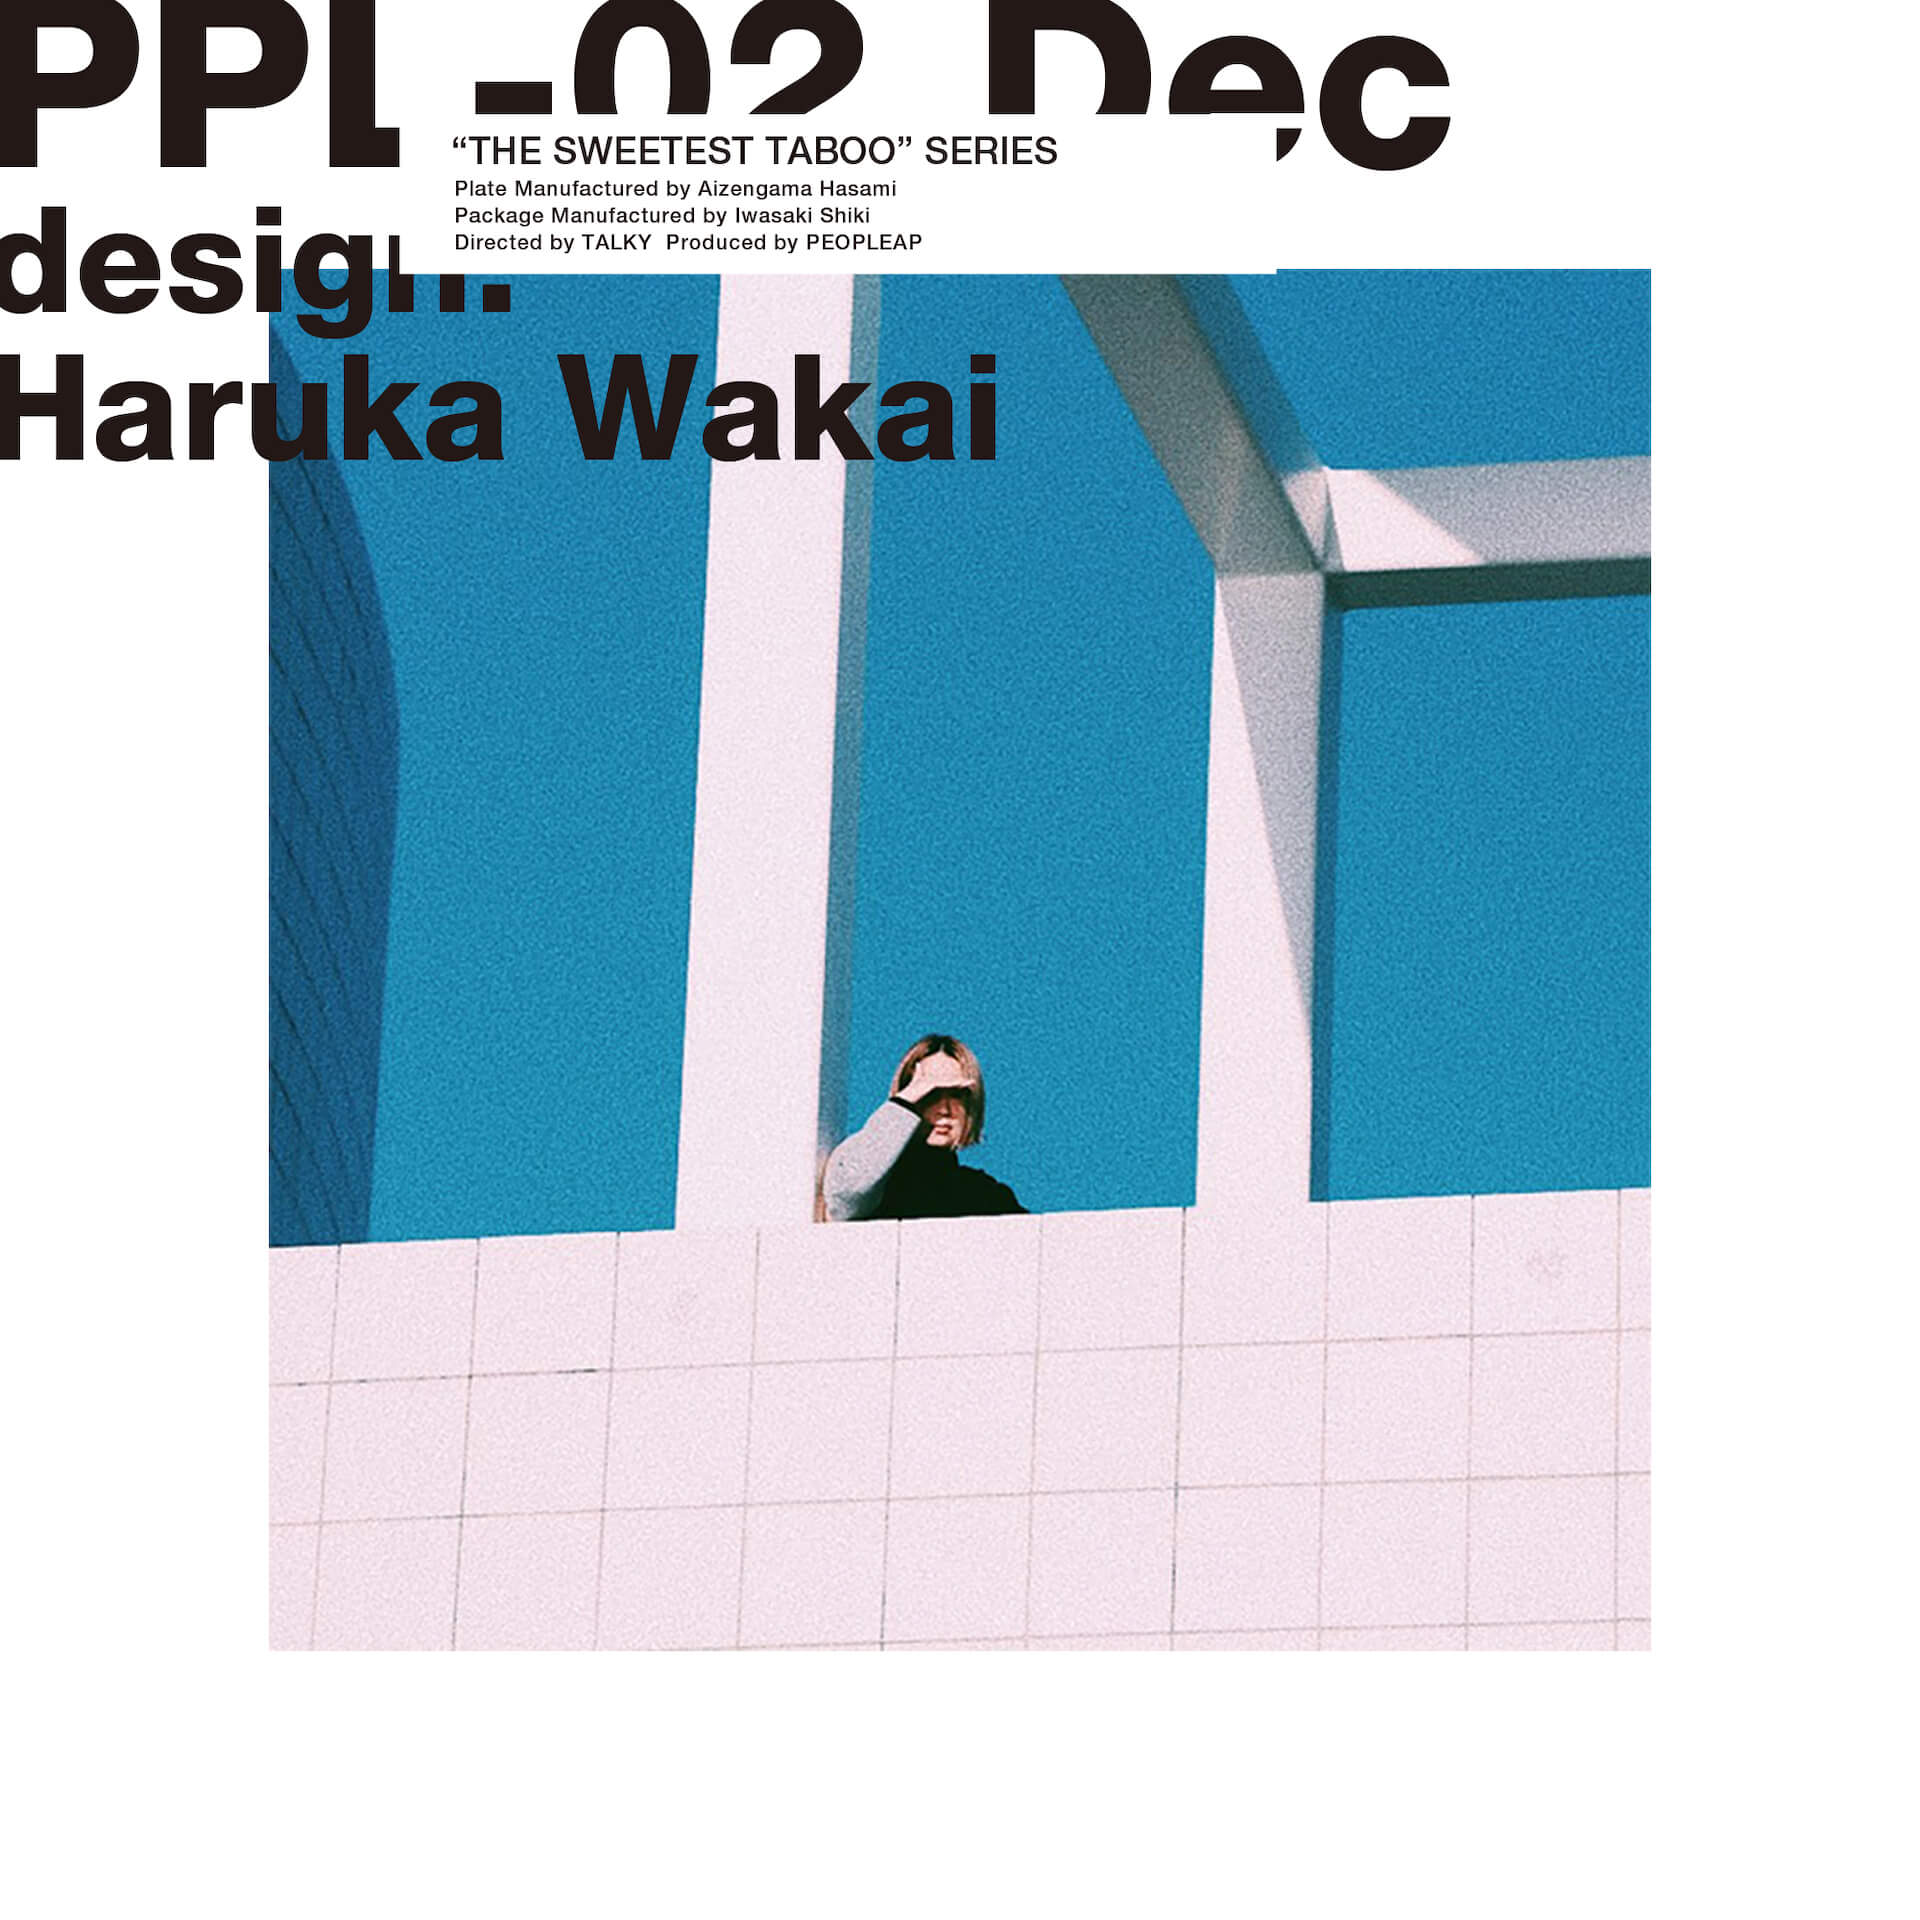 インタビュー：PEOPLEAP『THE SWEETEST TABOO』シリーズ Vol.5 Haruka Wakai／MIZUKI interview211015_peopleap_2